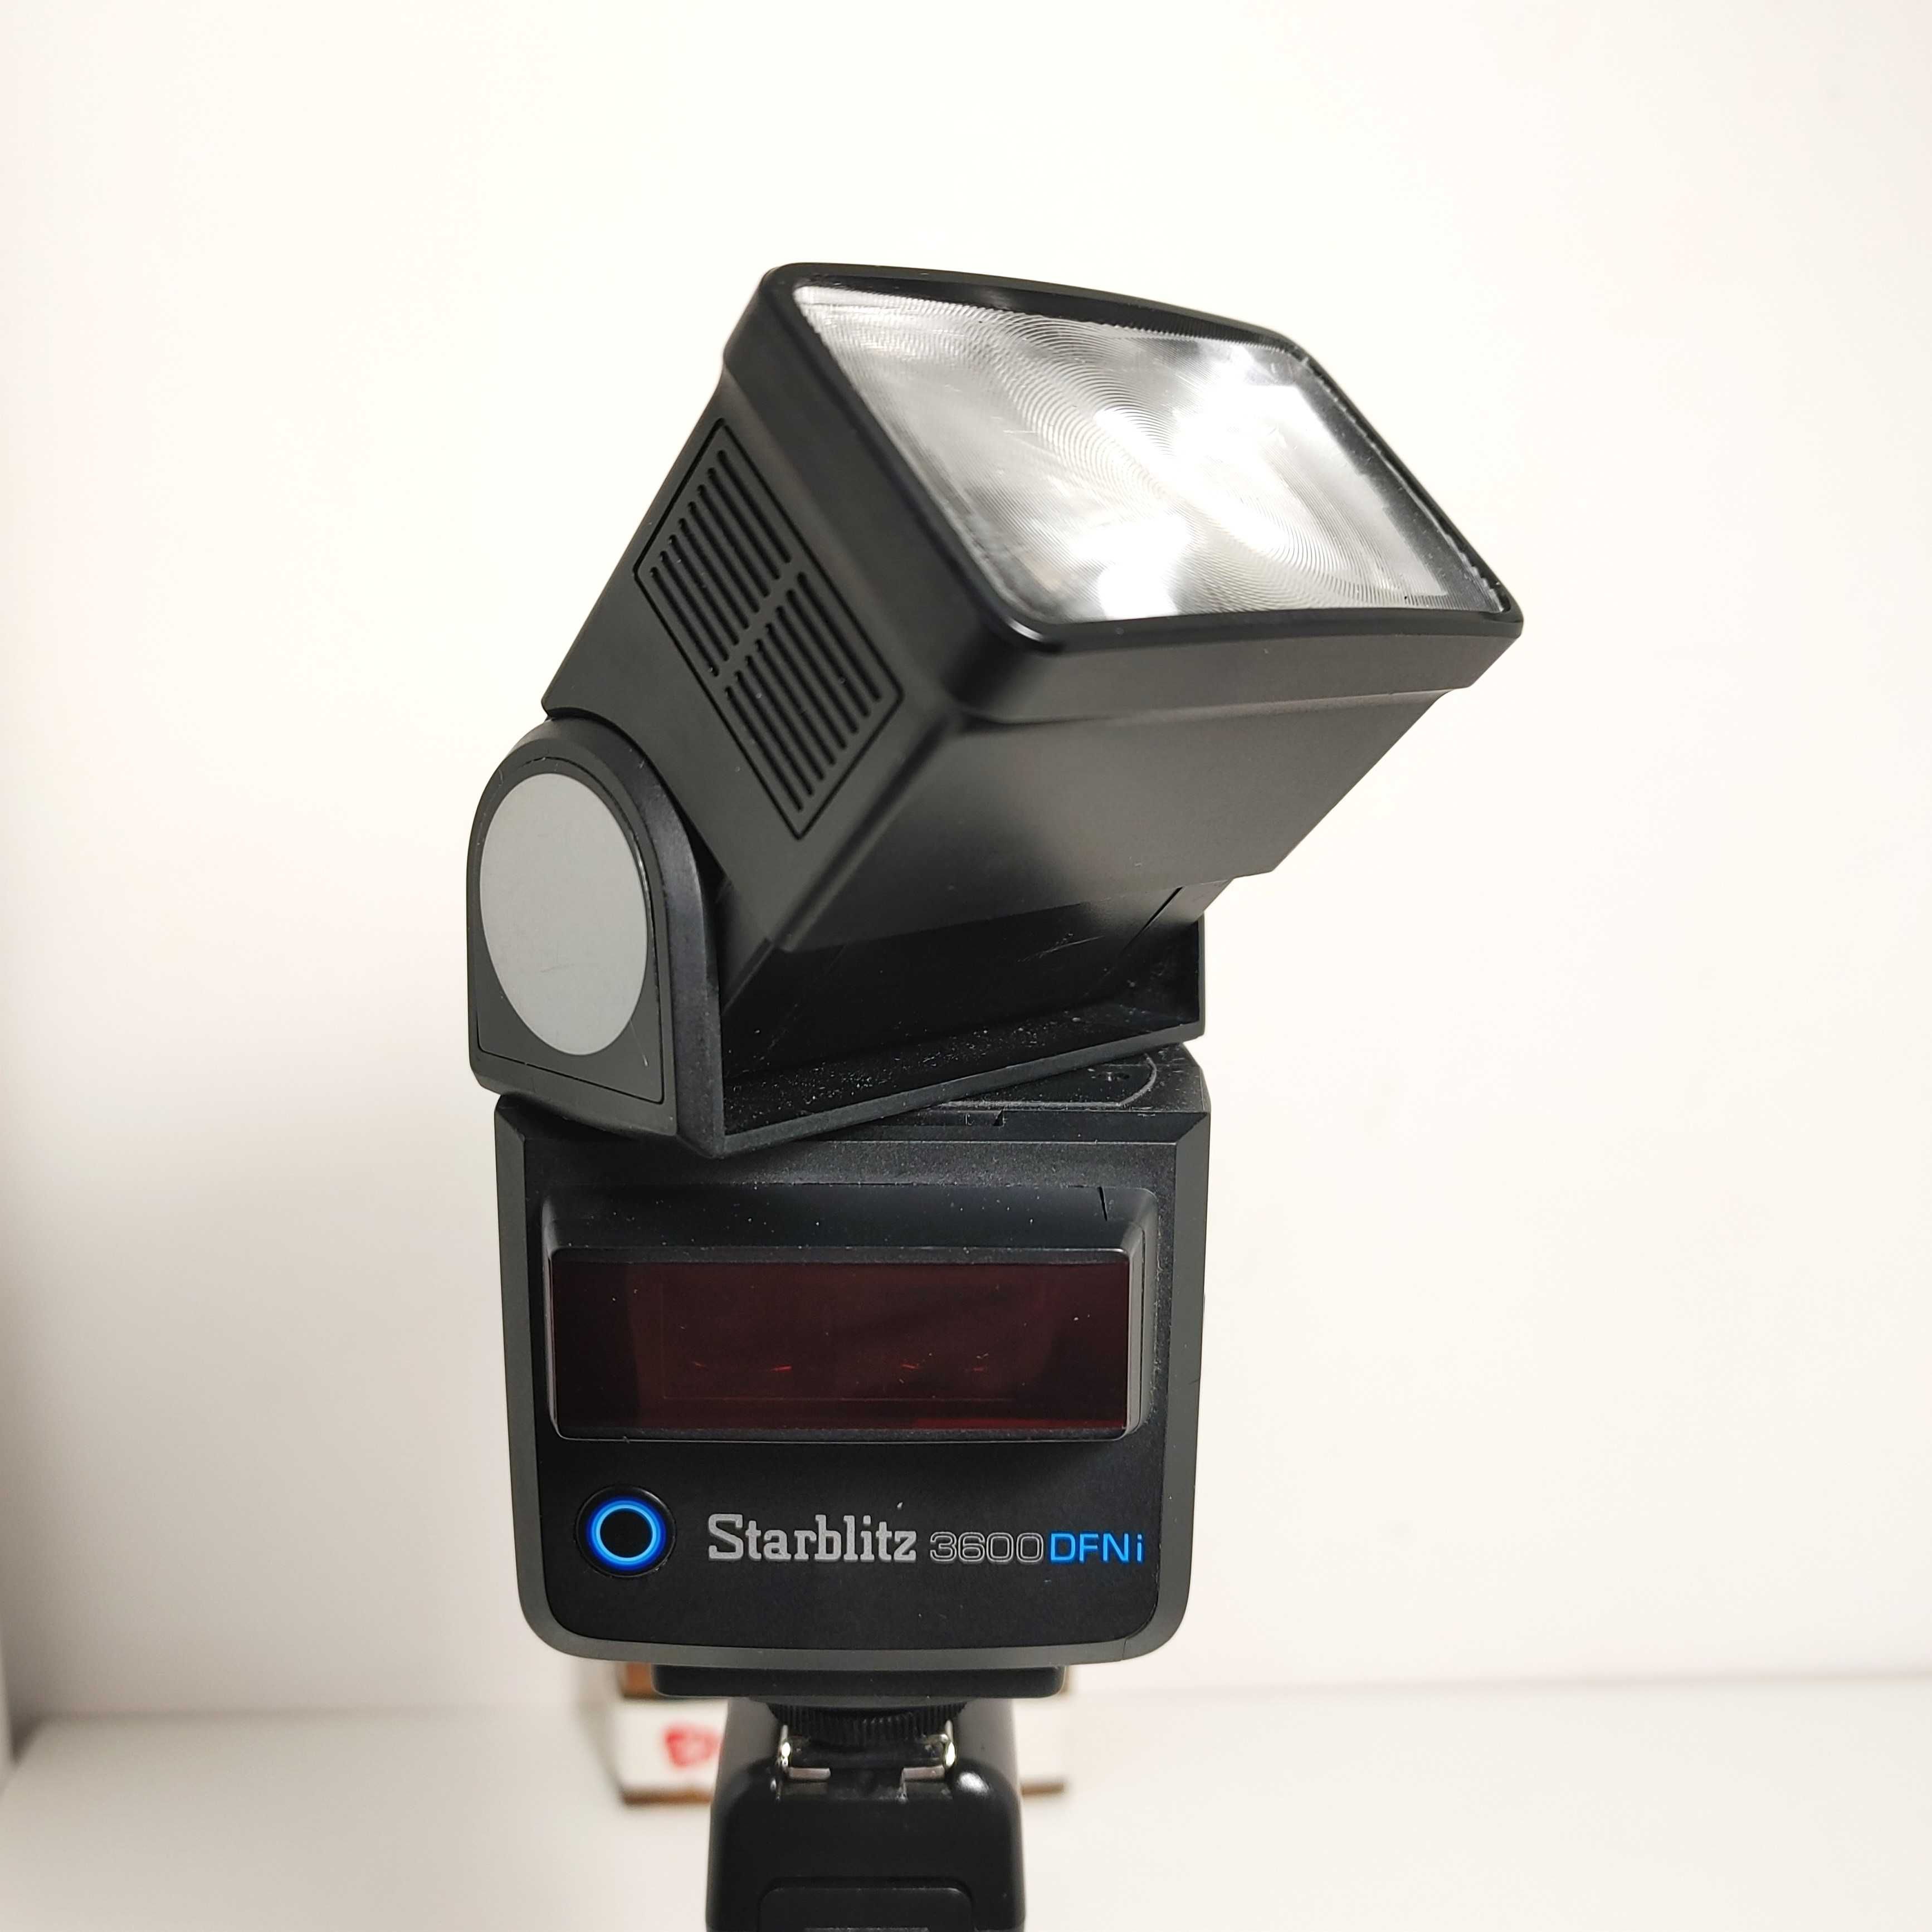 Lampa błyskowa dedykowana do aparatów NIKON F -  Starblitz 3600 SFNi